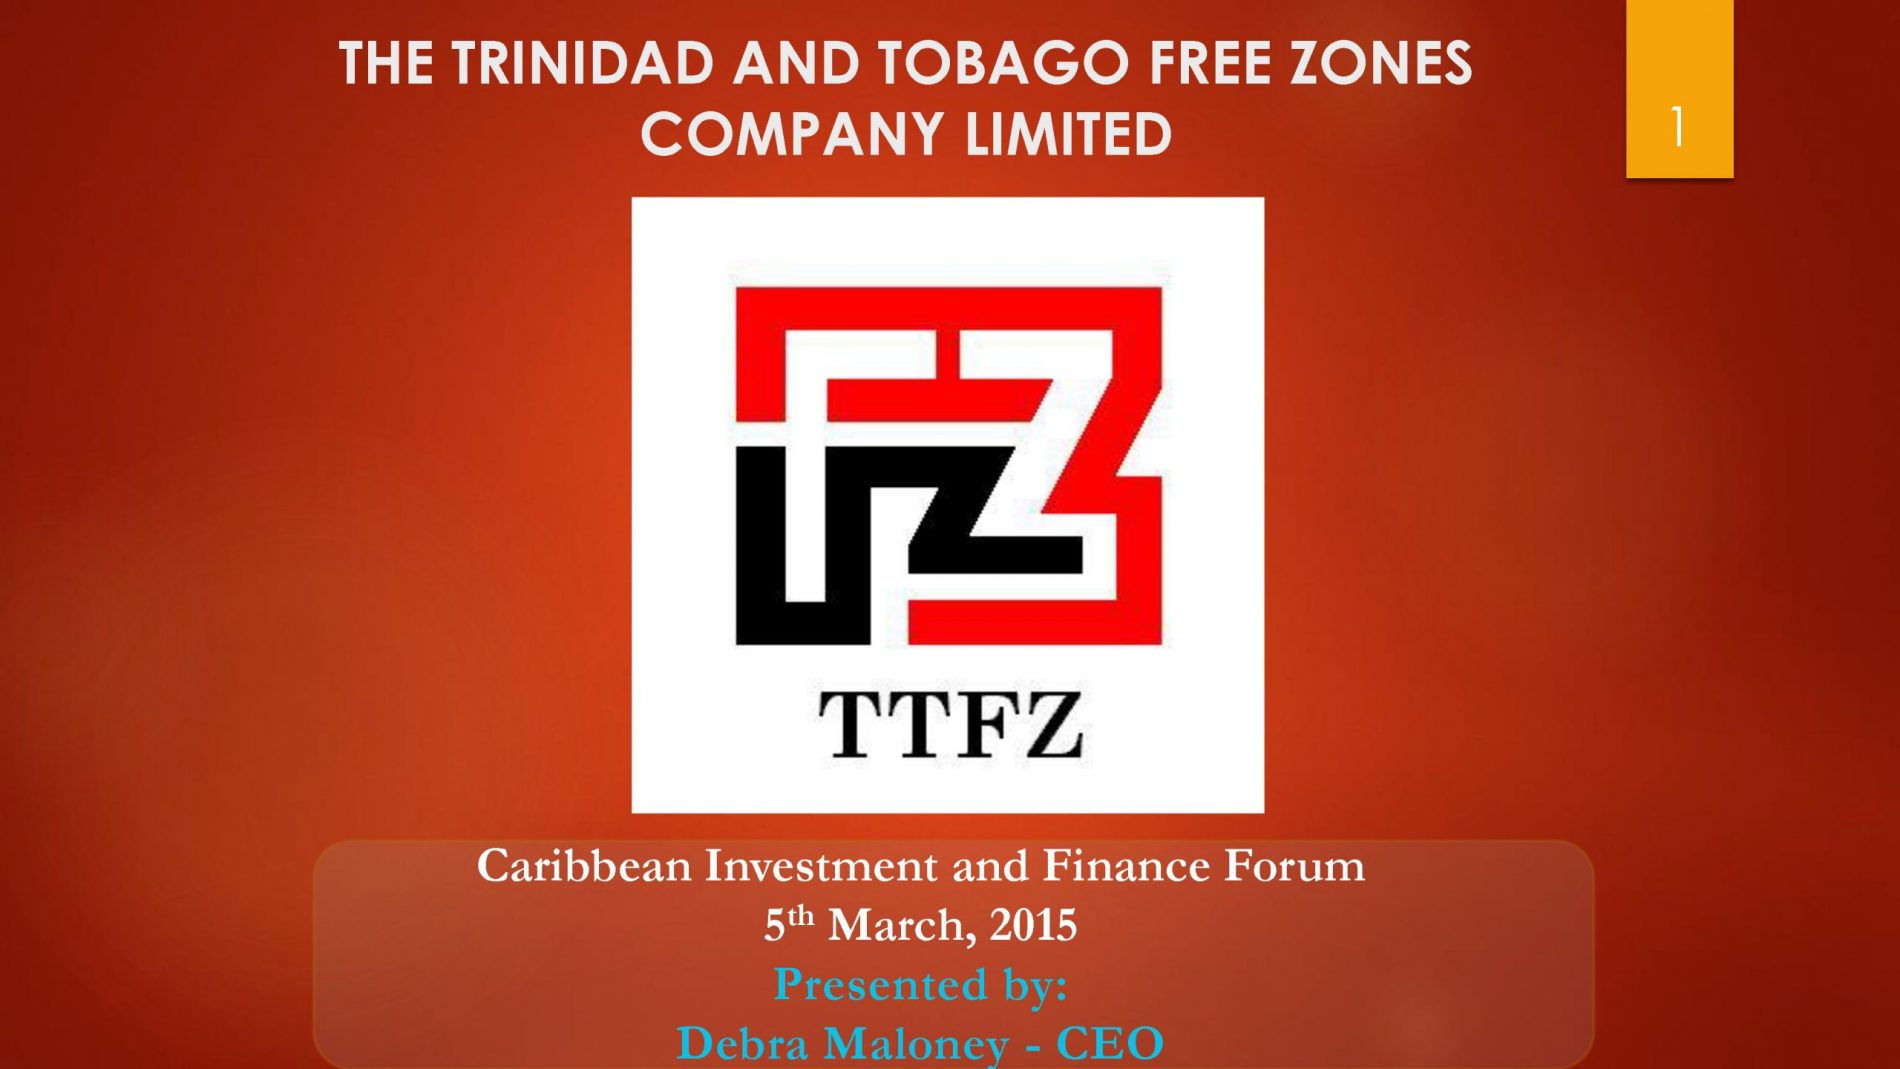 The Trinidad And Tobago Free Zones Programme